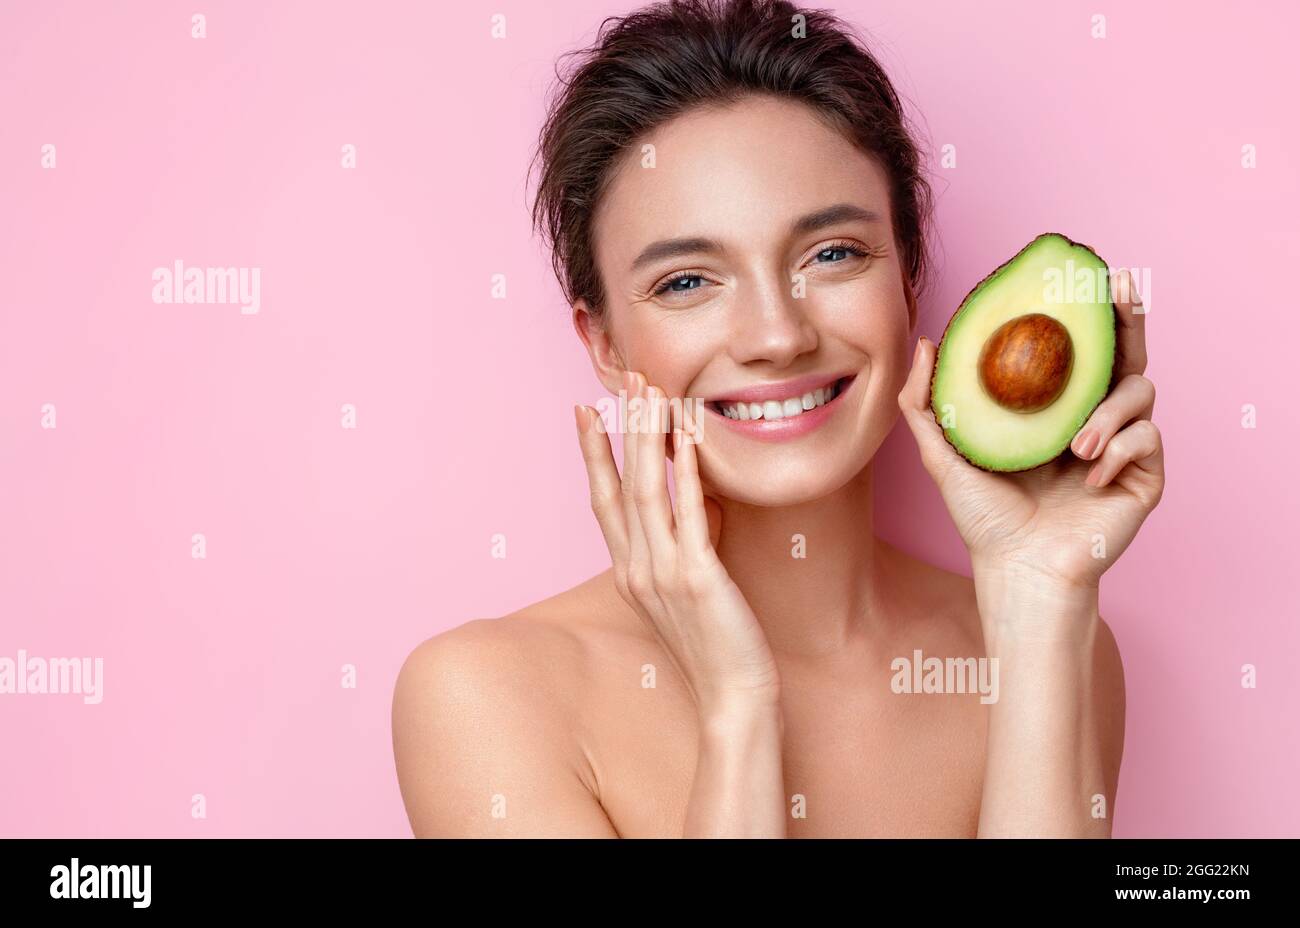 Lachende junge Frau mit einer halben Avocado. Foto von attraktiven Frau mit perfektem Make-up auf rosa Hintergrund. Beauty & Hautpflege Konzept Stockfoto